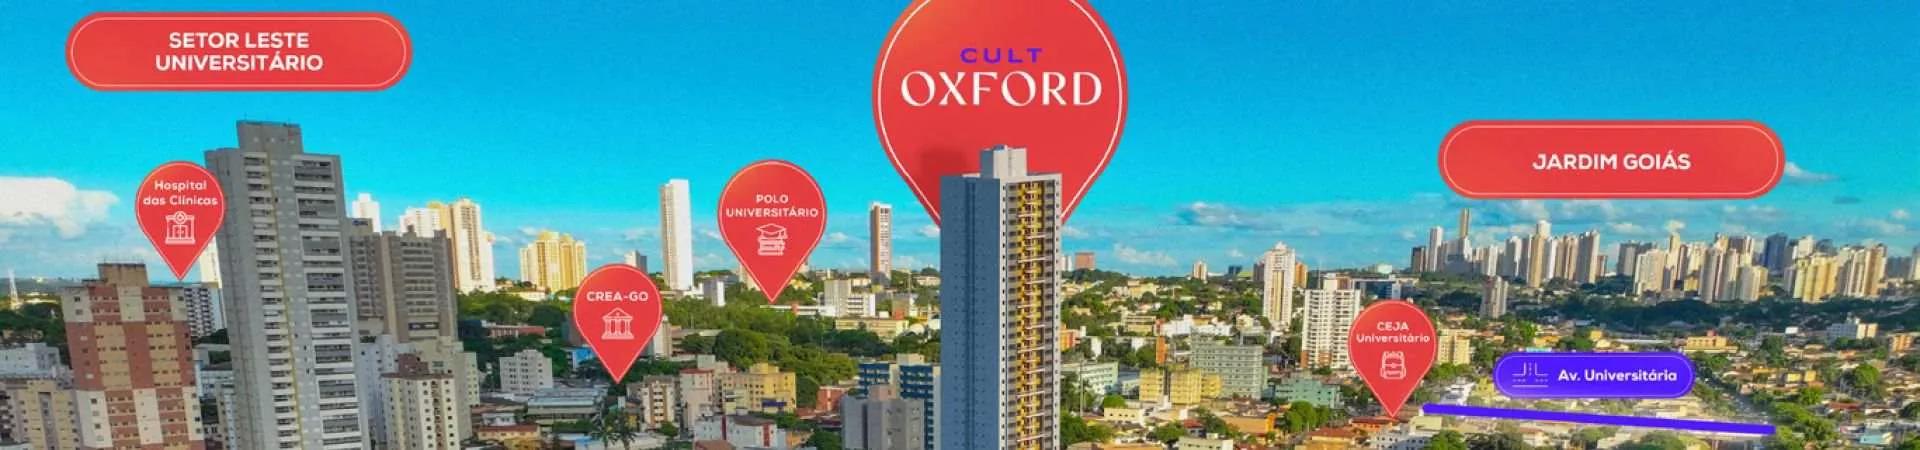 Localização do Cult Oxford